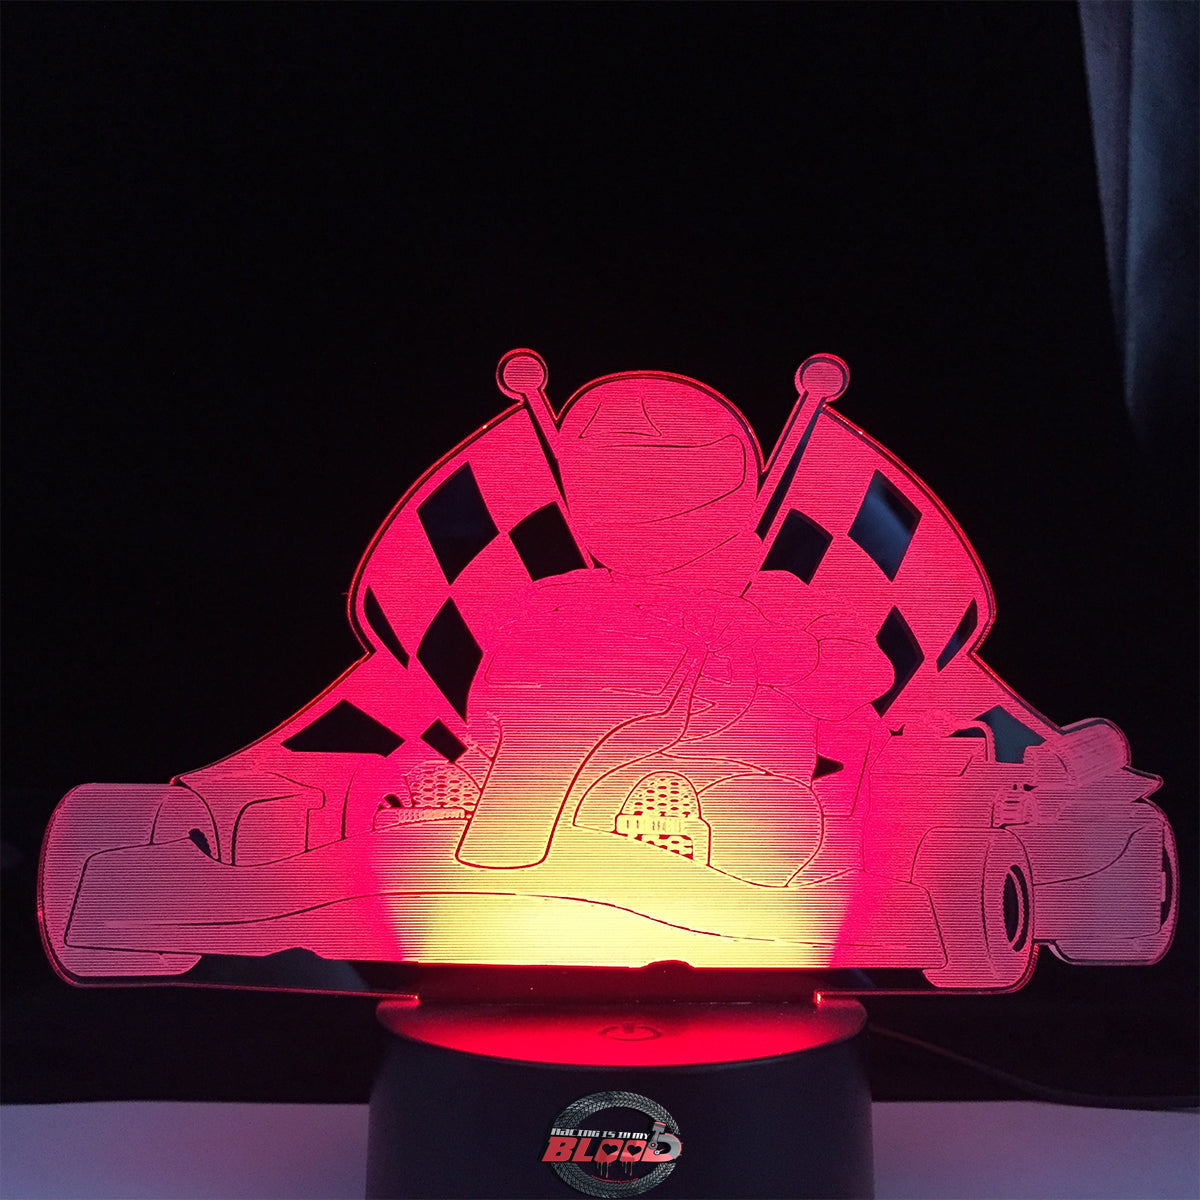 Kart Racing Lamp